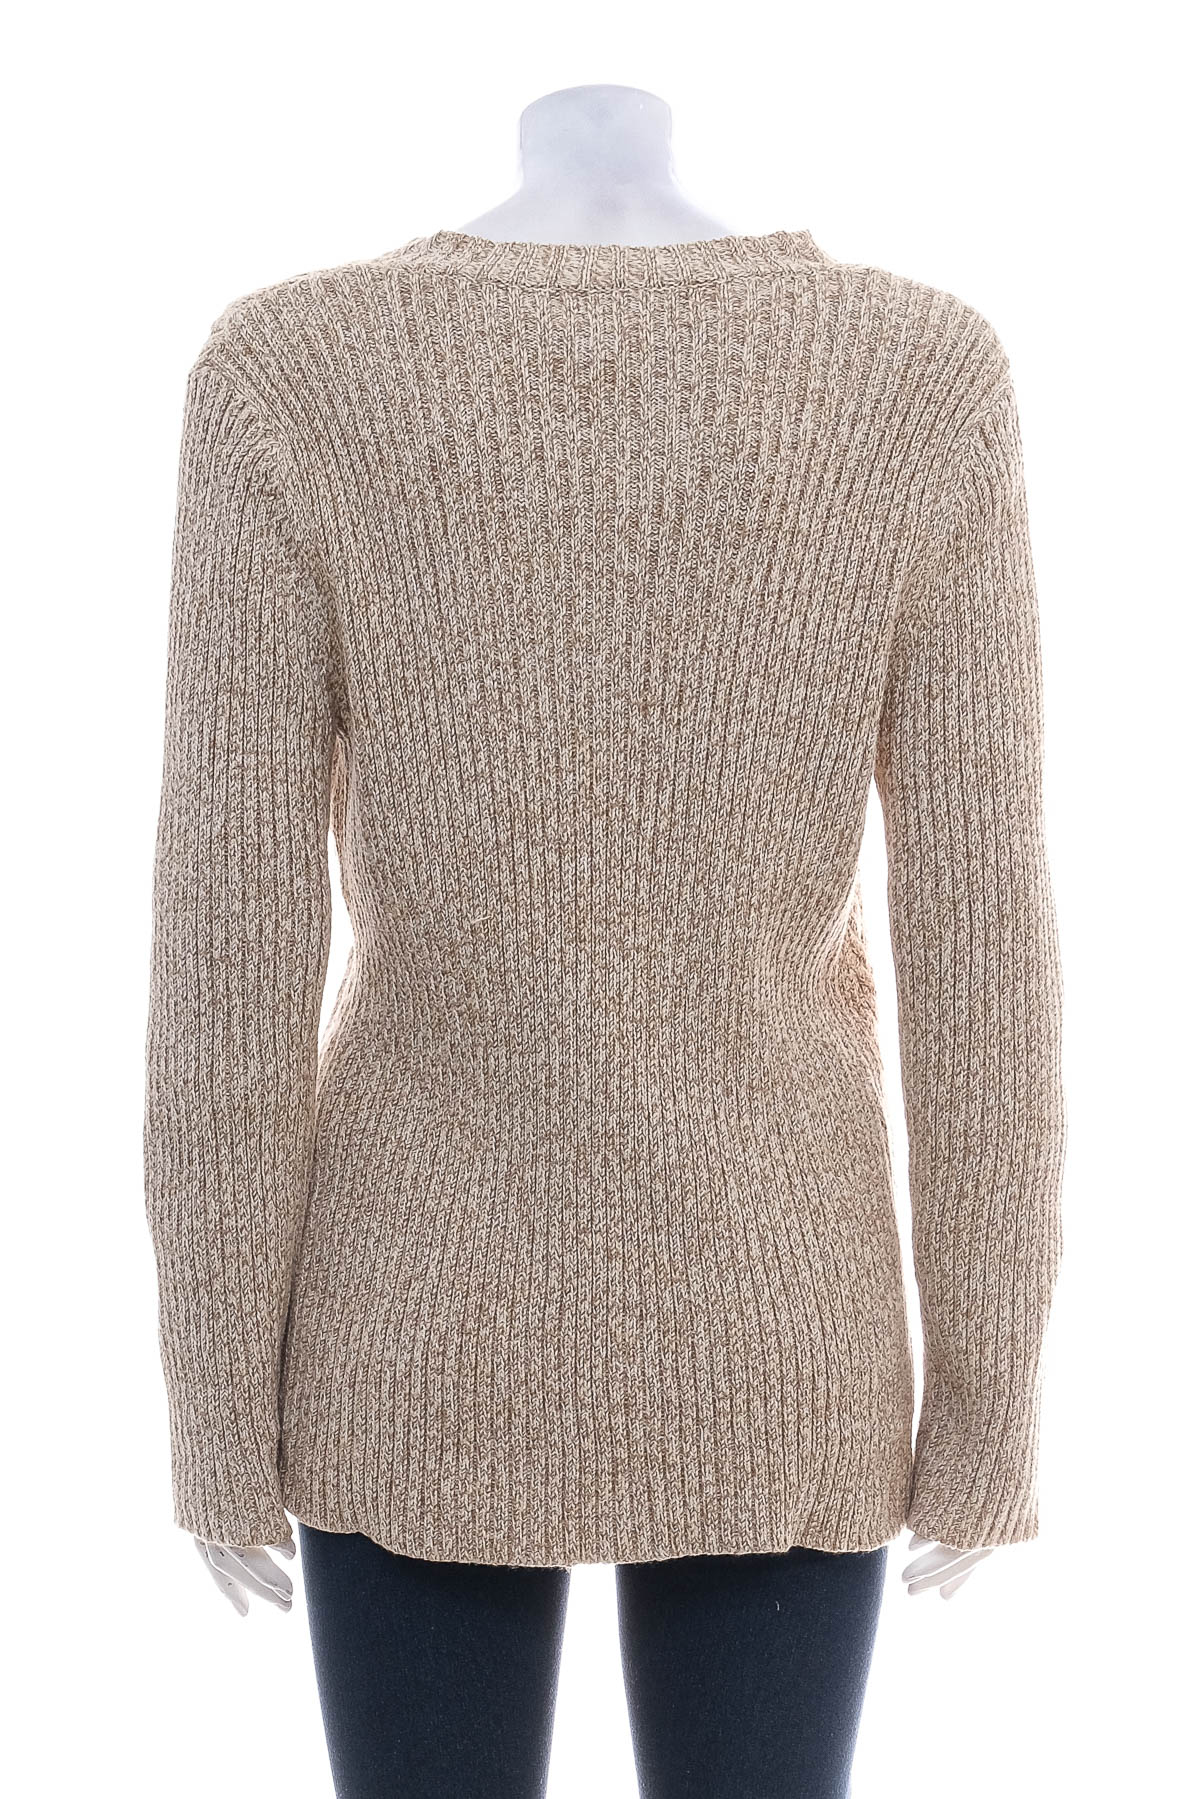 Women's sweater - JONES NEW YORK - 1